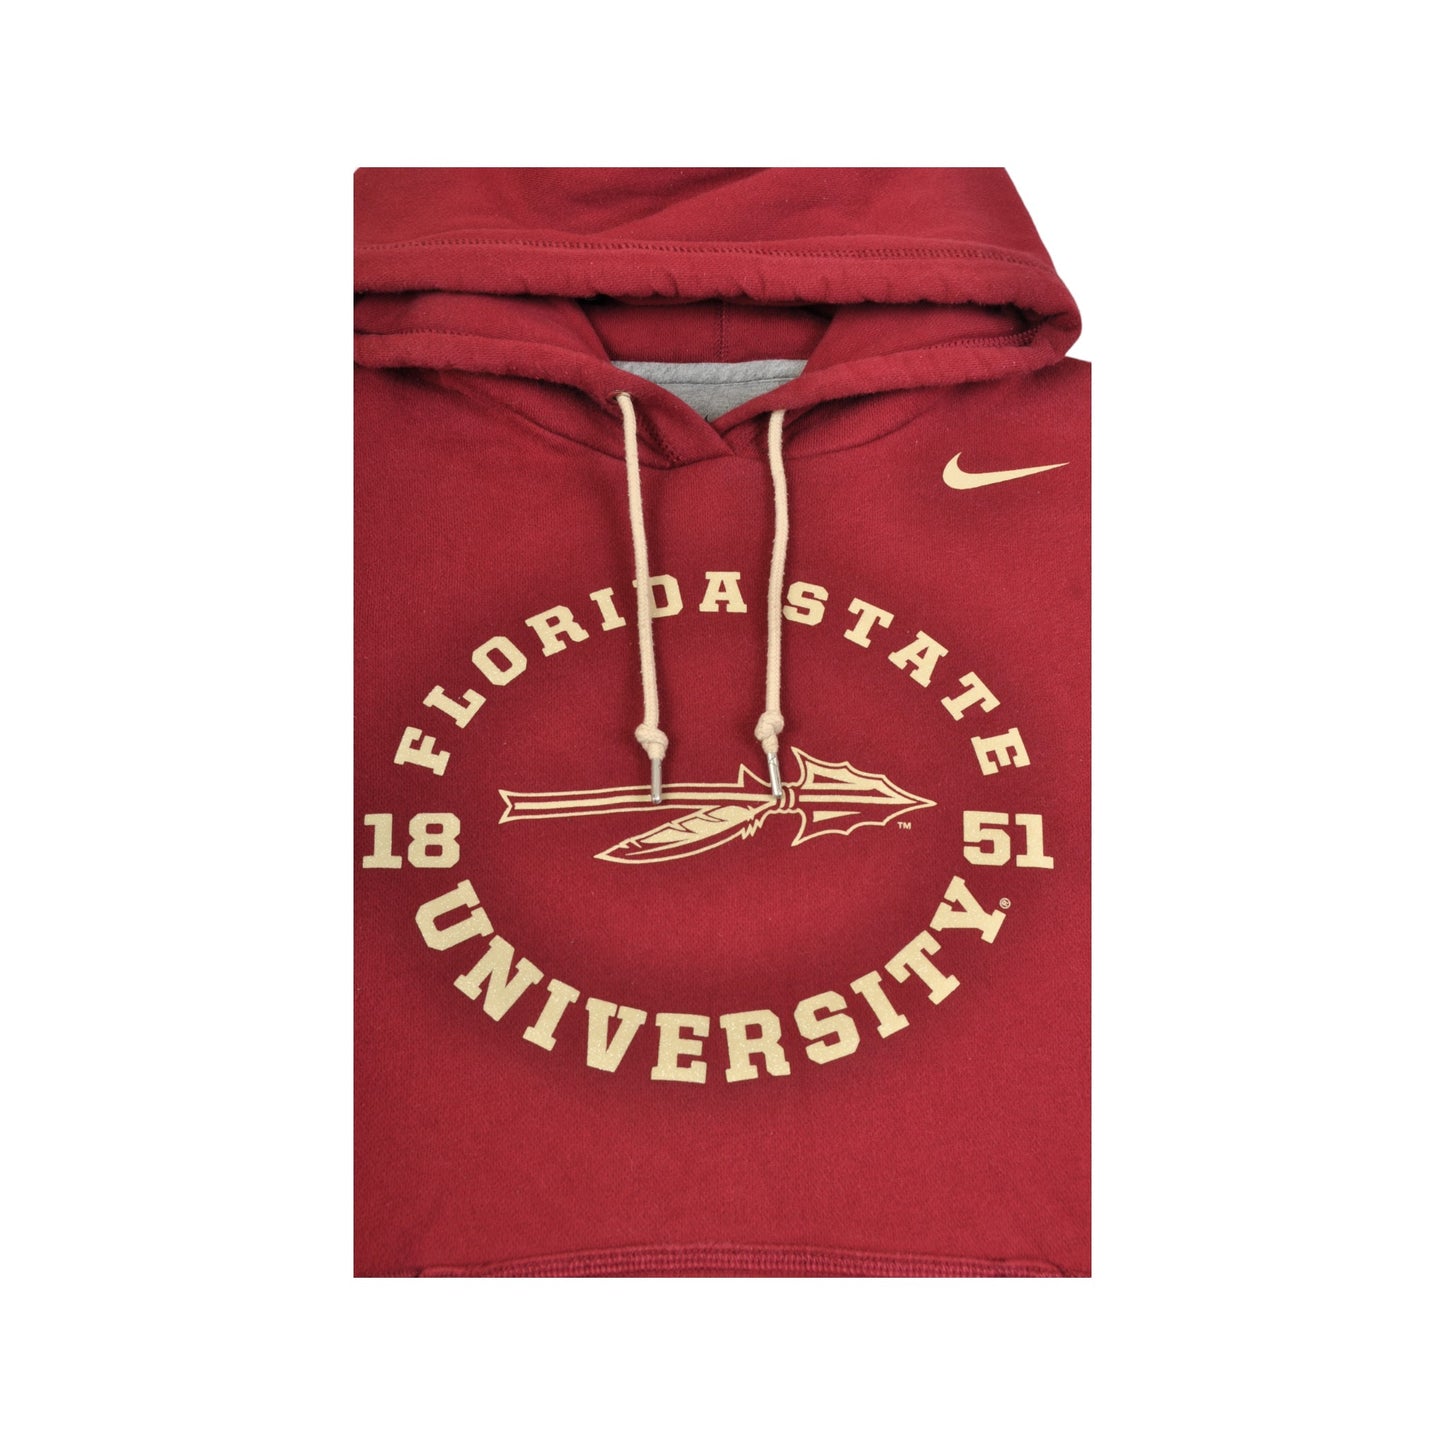 Vintage Nike Florida State University Hoodie Sweatshirt Burgundy Ladies Medium